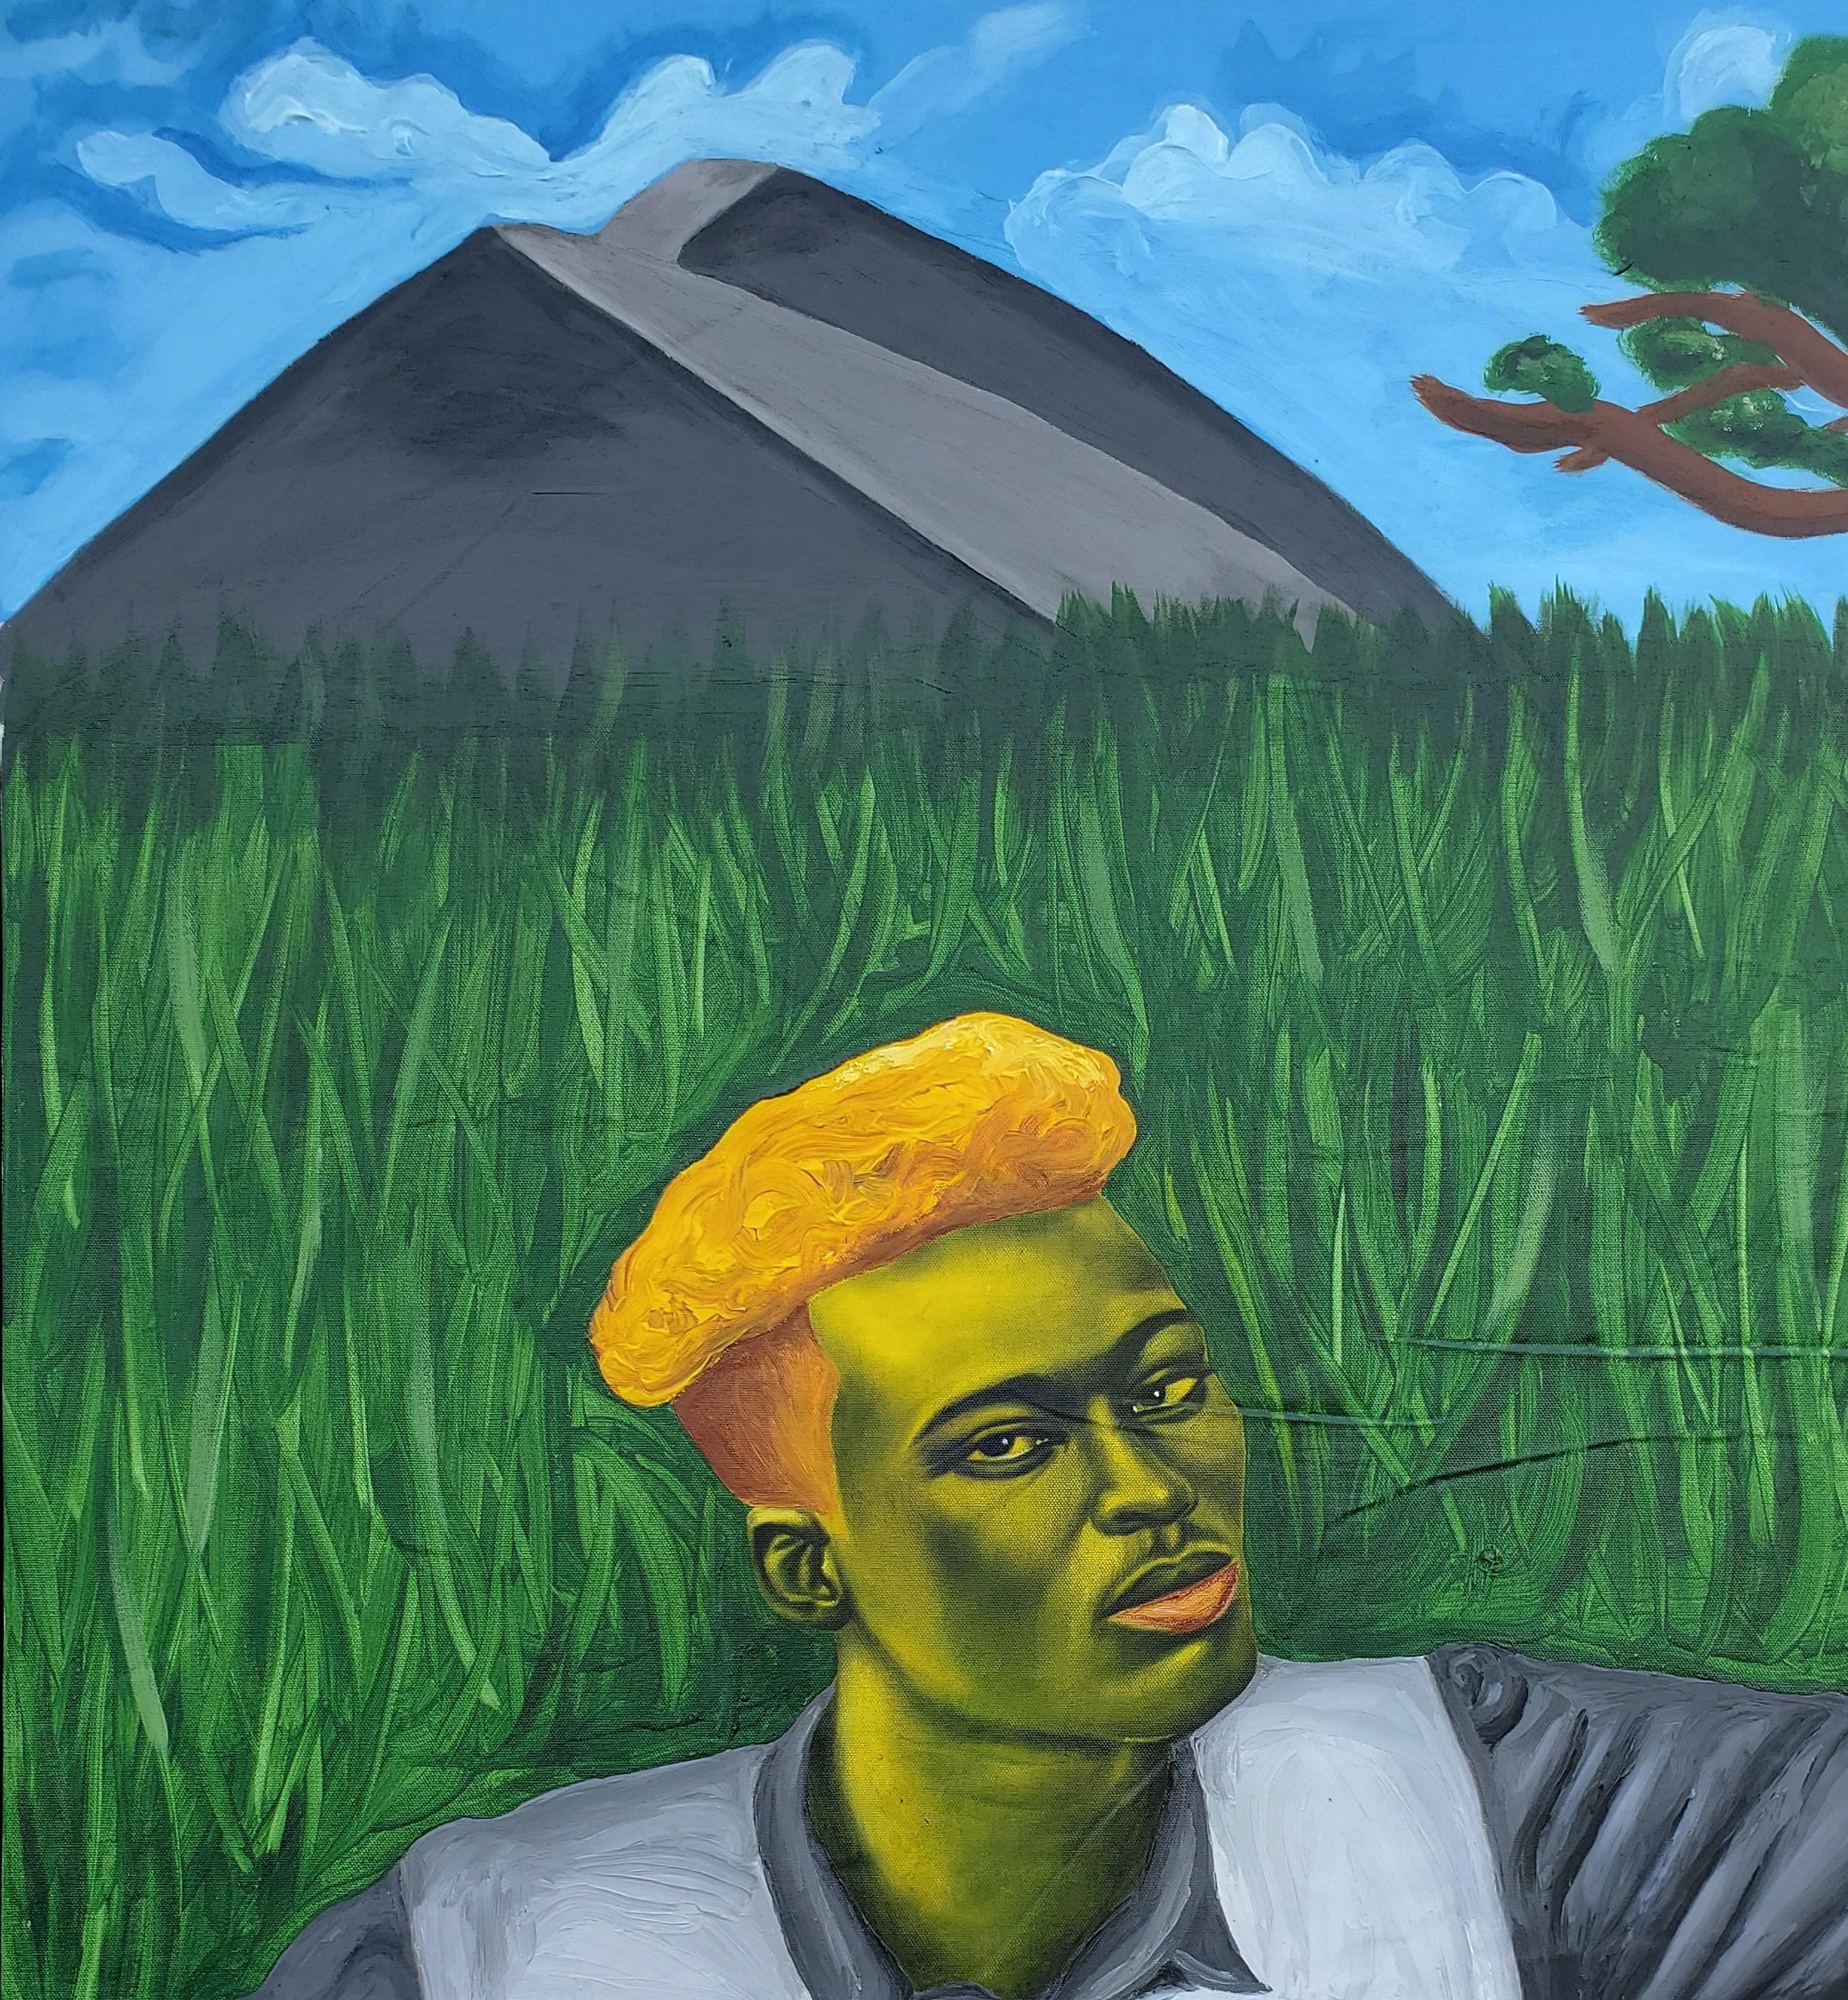 Unbenannt – Painting von Simeon Nwoko